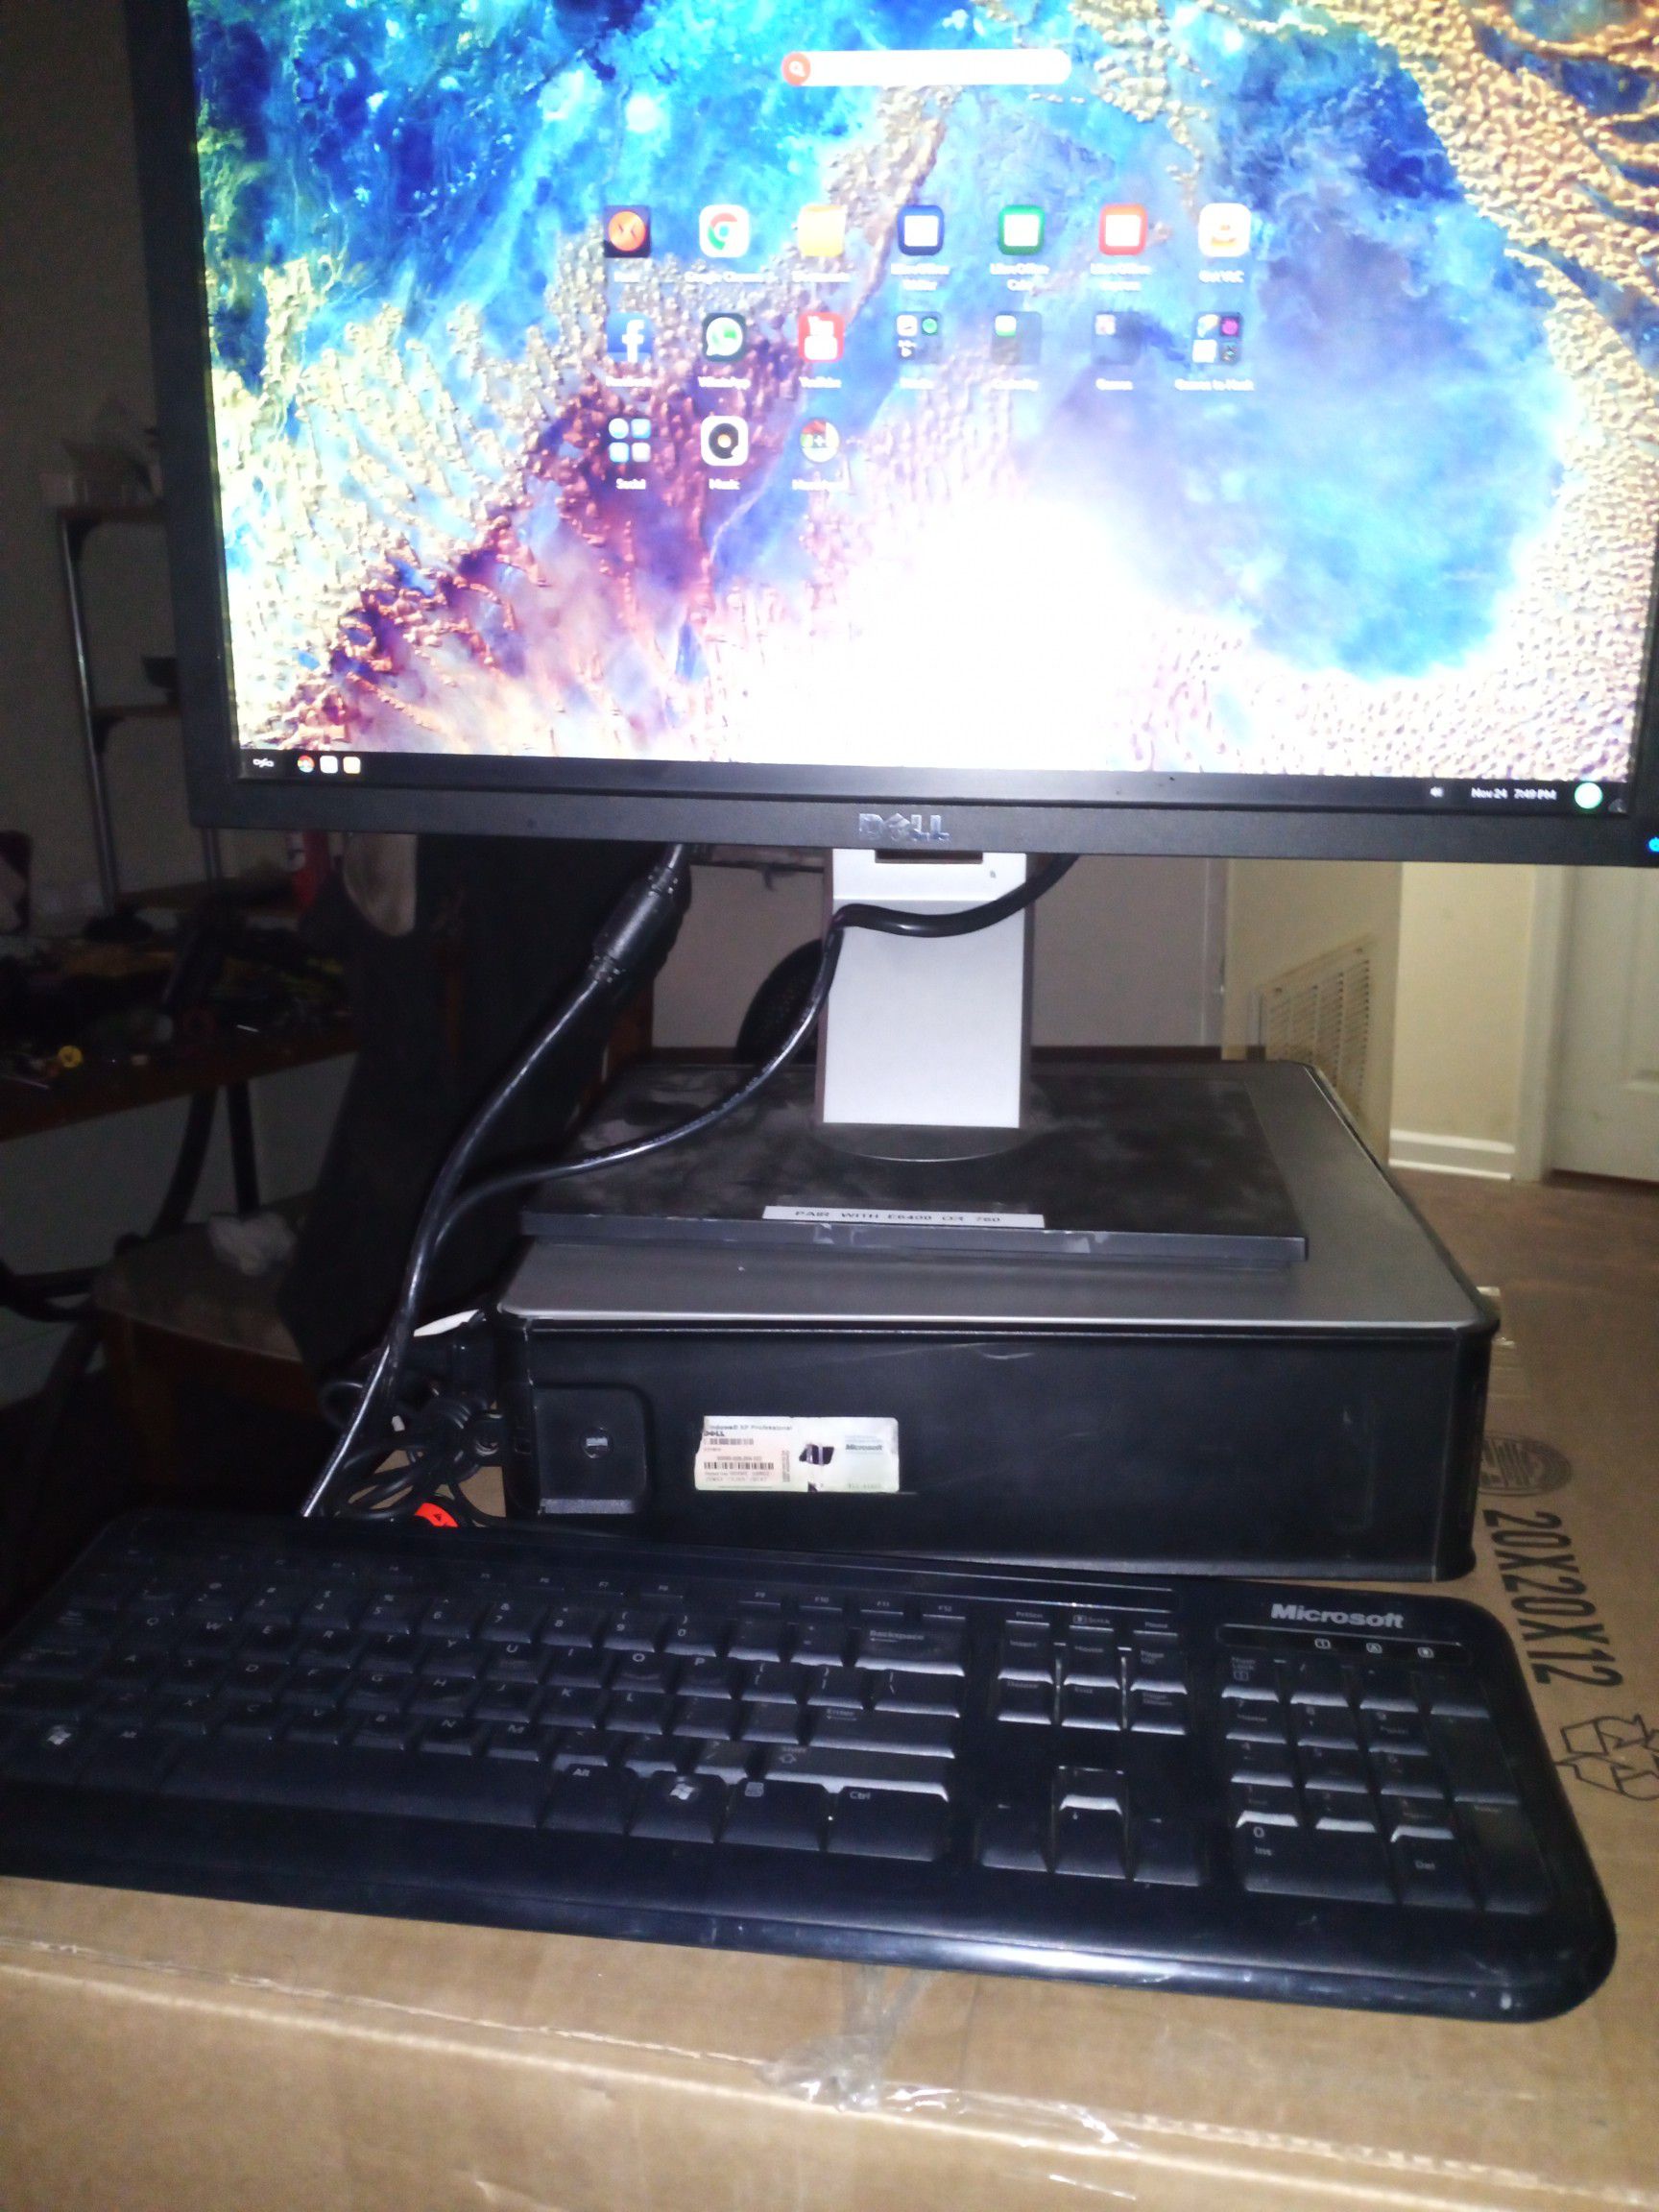 Dell computer desktop with webcam and headphones